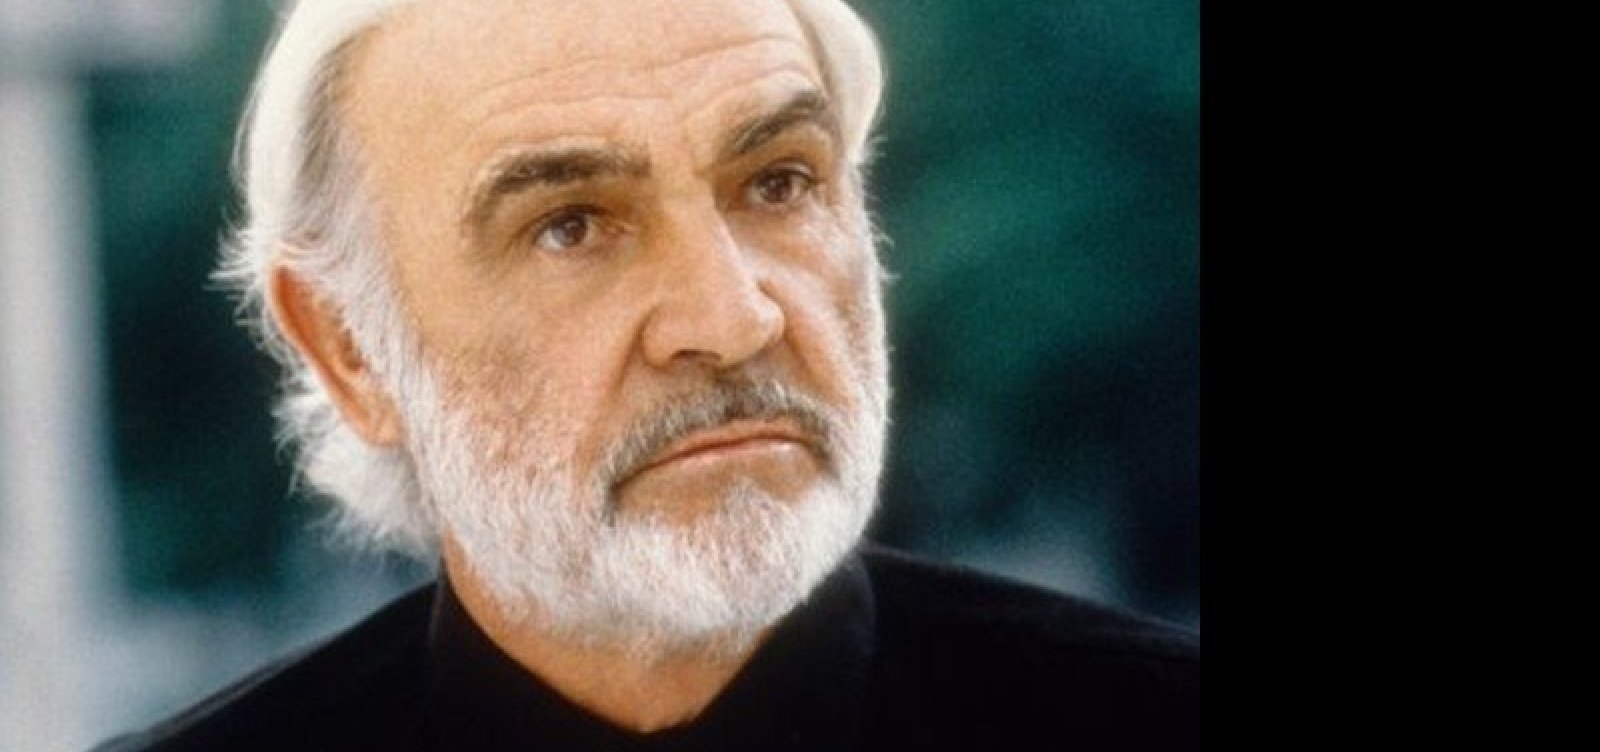 Famoso por interpretar James Bond, ator Sean Connery morre aos 90 anos